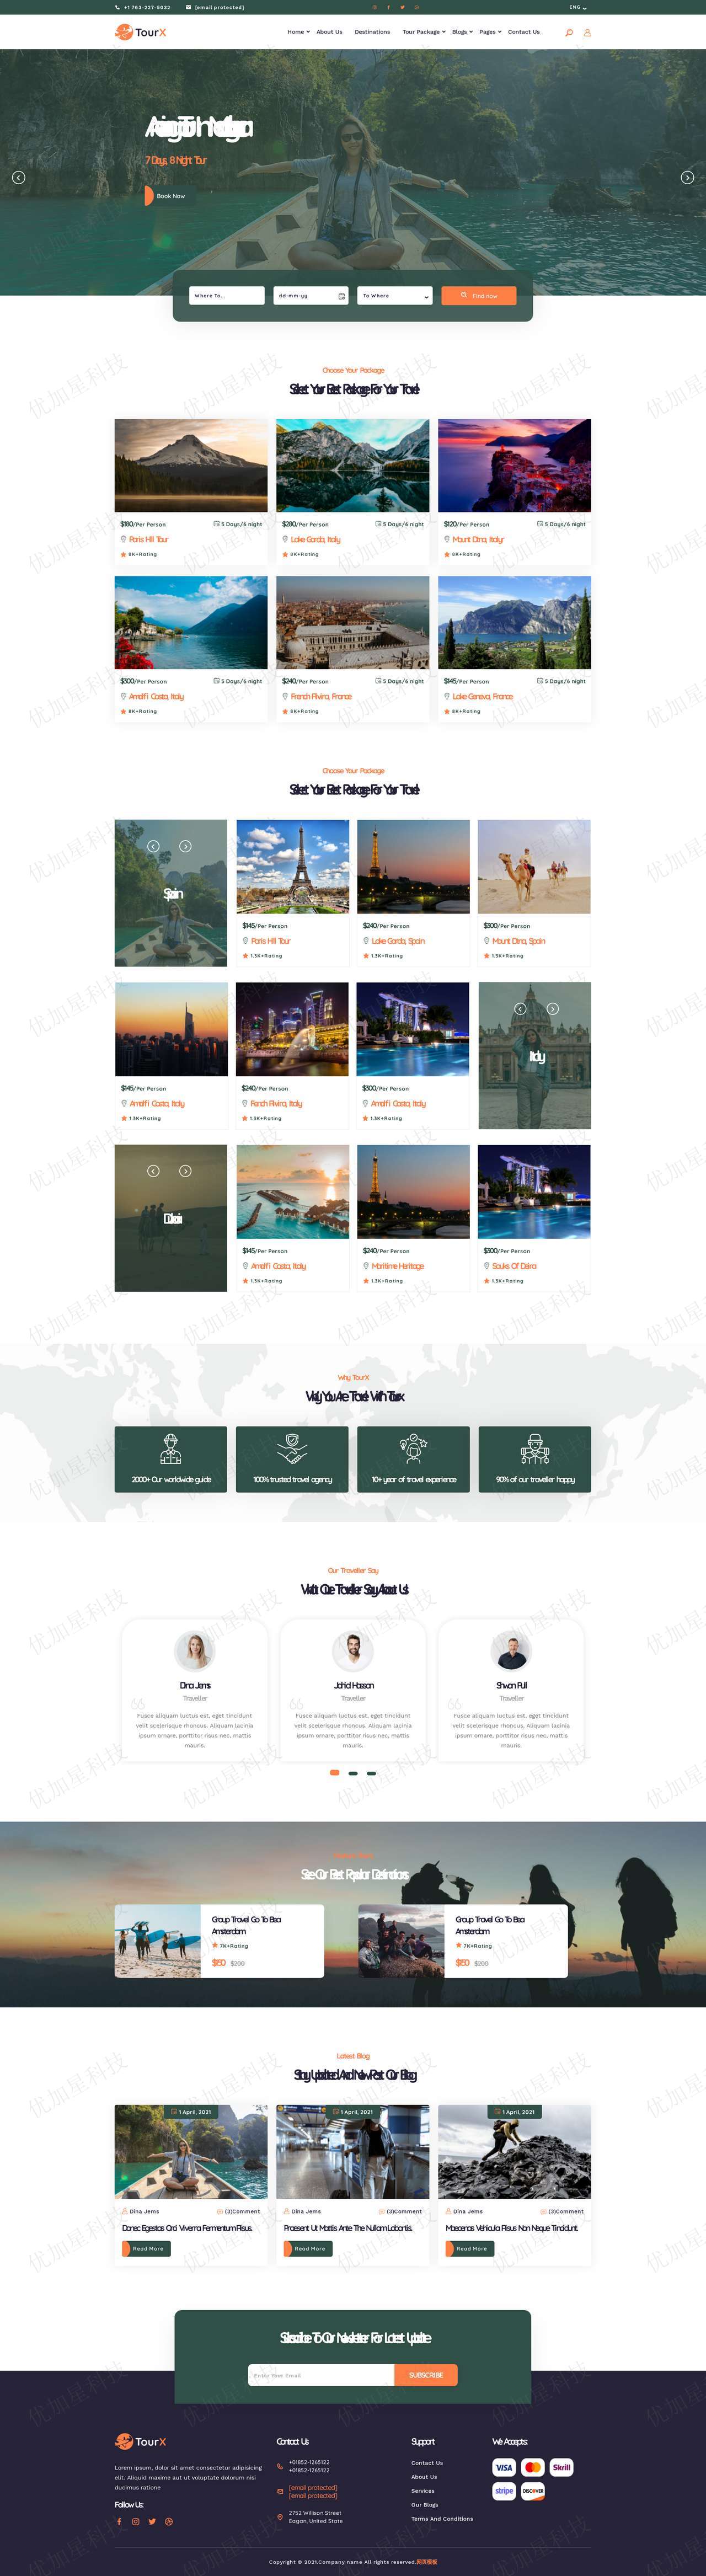 旅游套餐服务网站HTML5源码模板_优加星网络科技